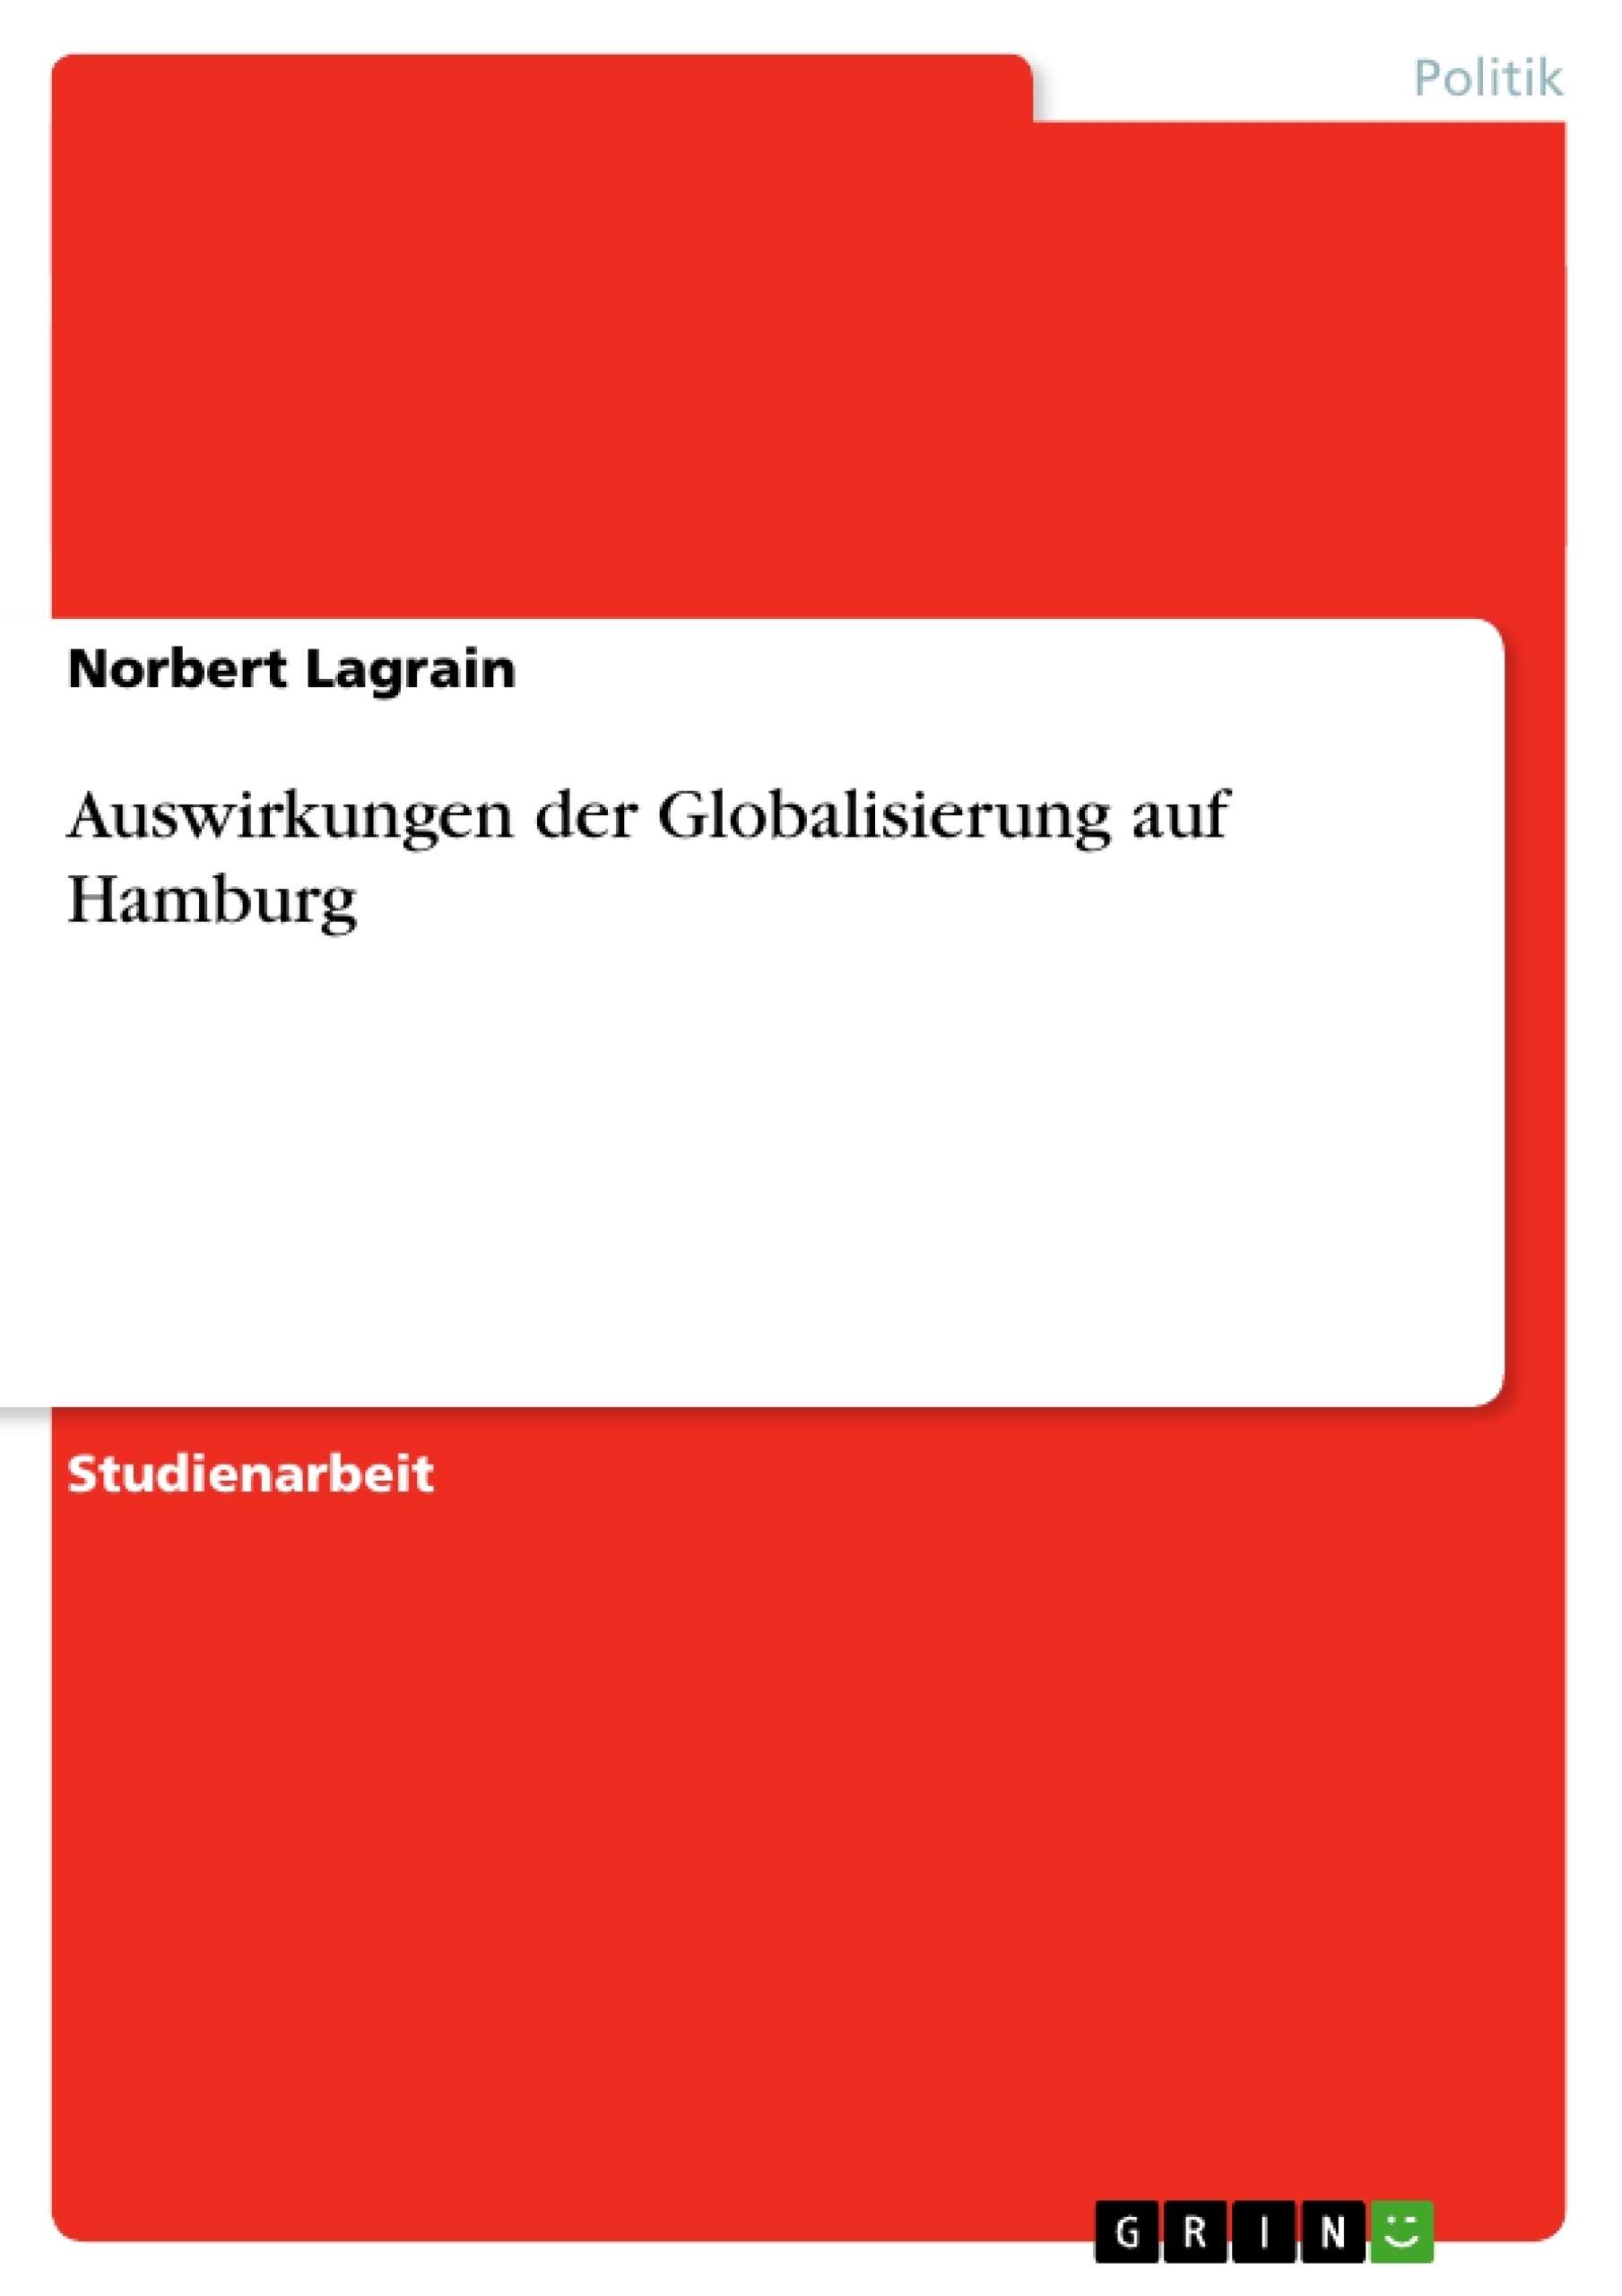 Titre: Auswirkungen der Globalisierung auf Hamburg